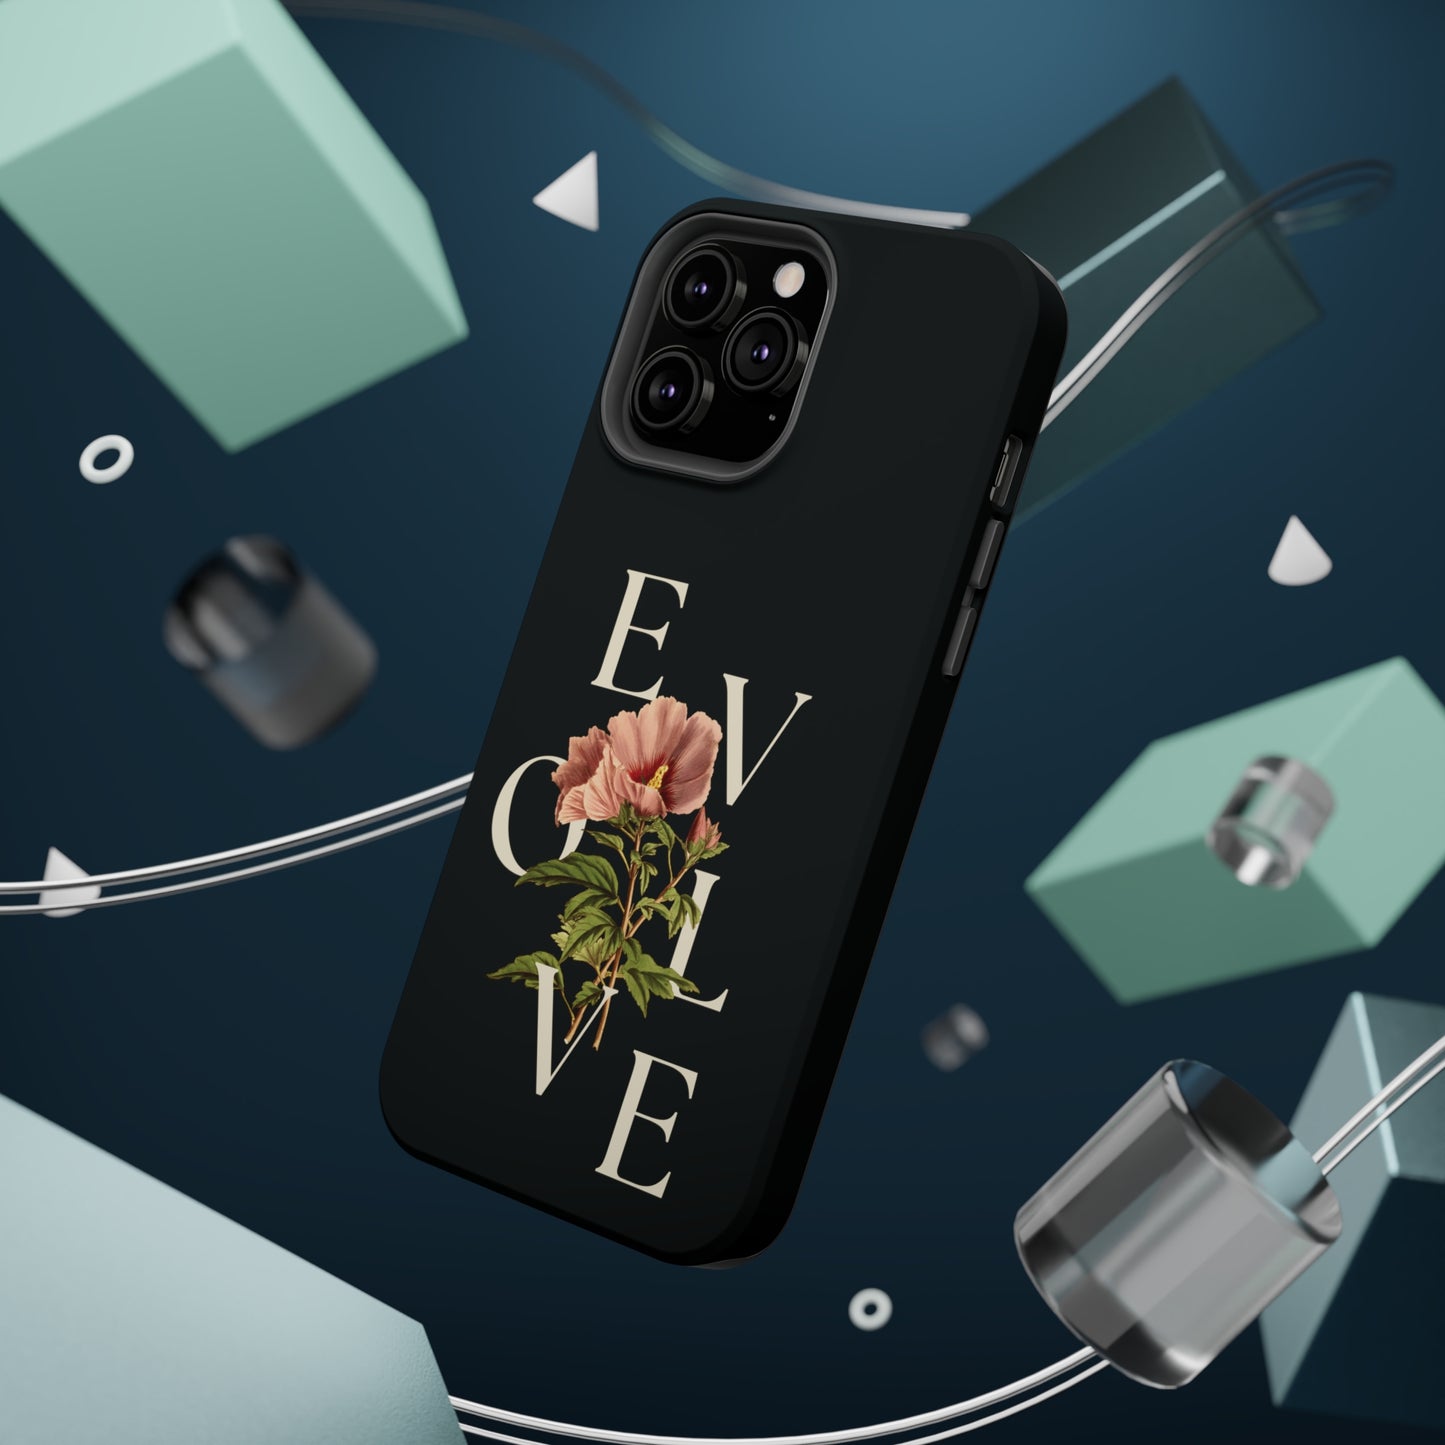 Evolve MagSafe Tough iPhone Case